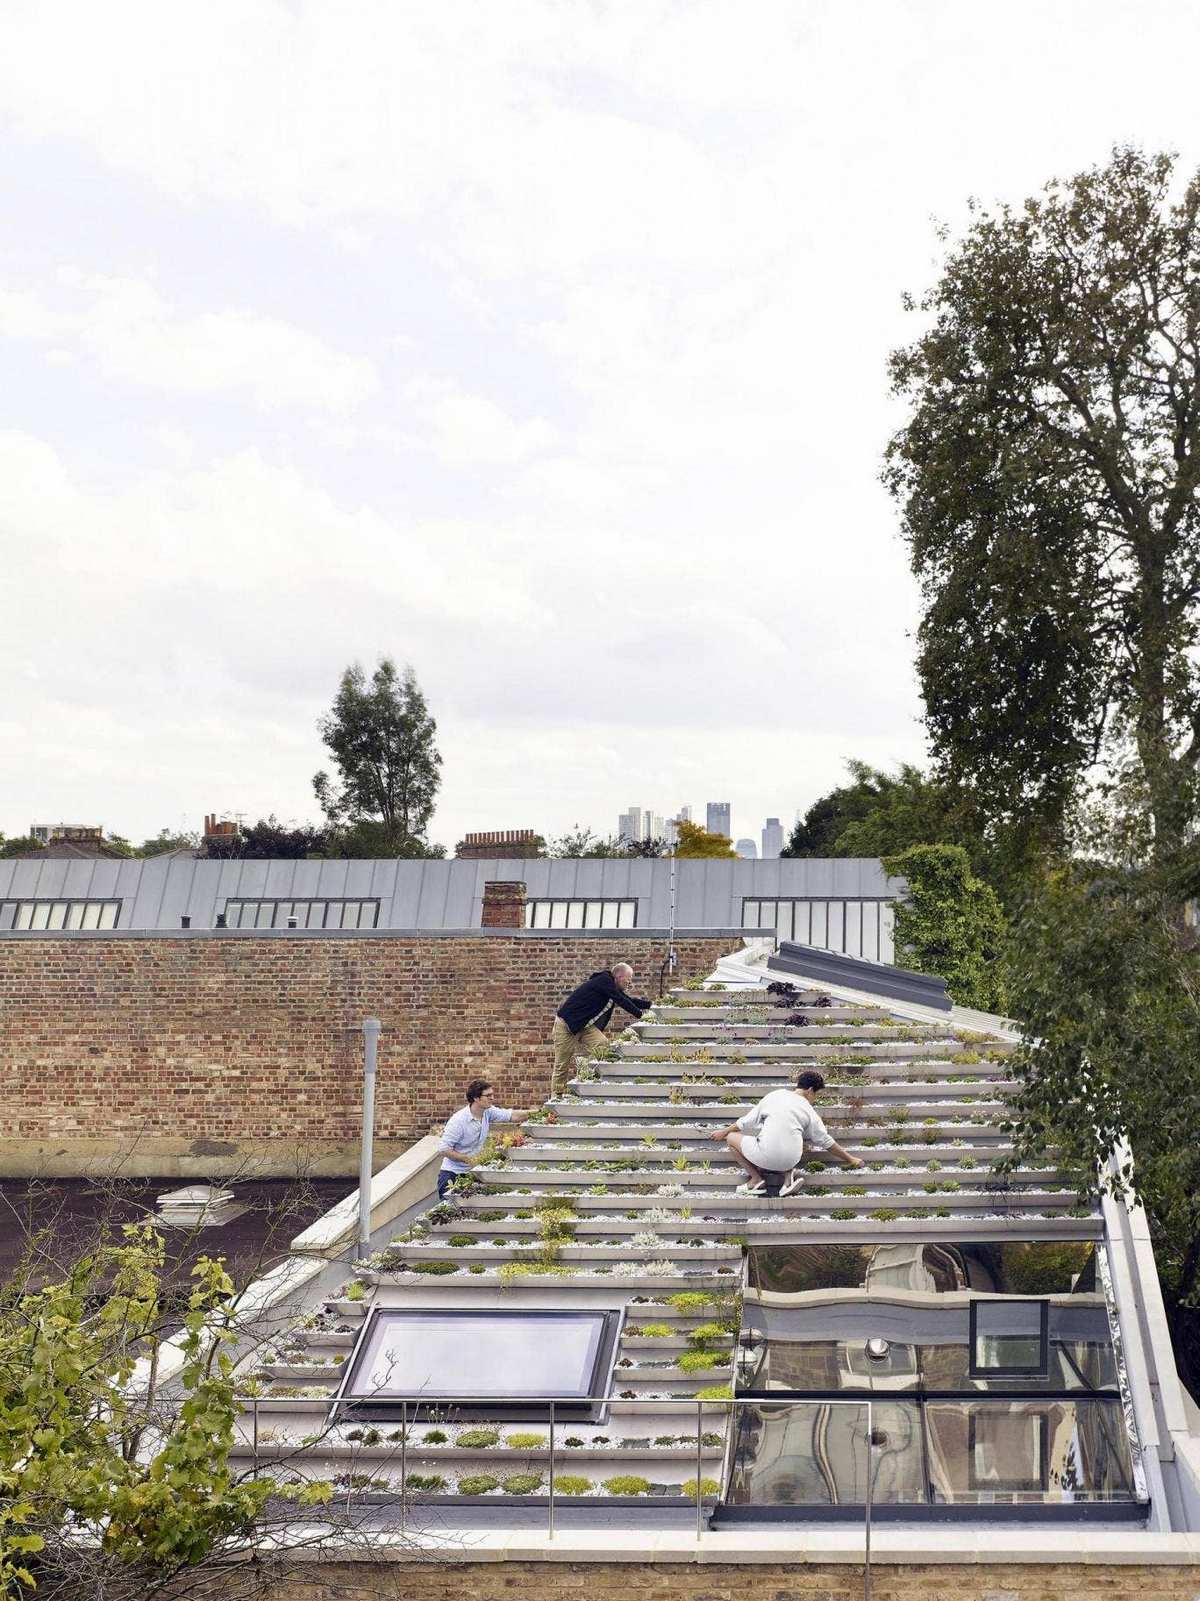 Дом с садом на крыше в Великобритании